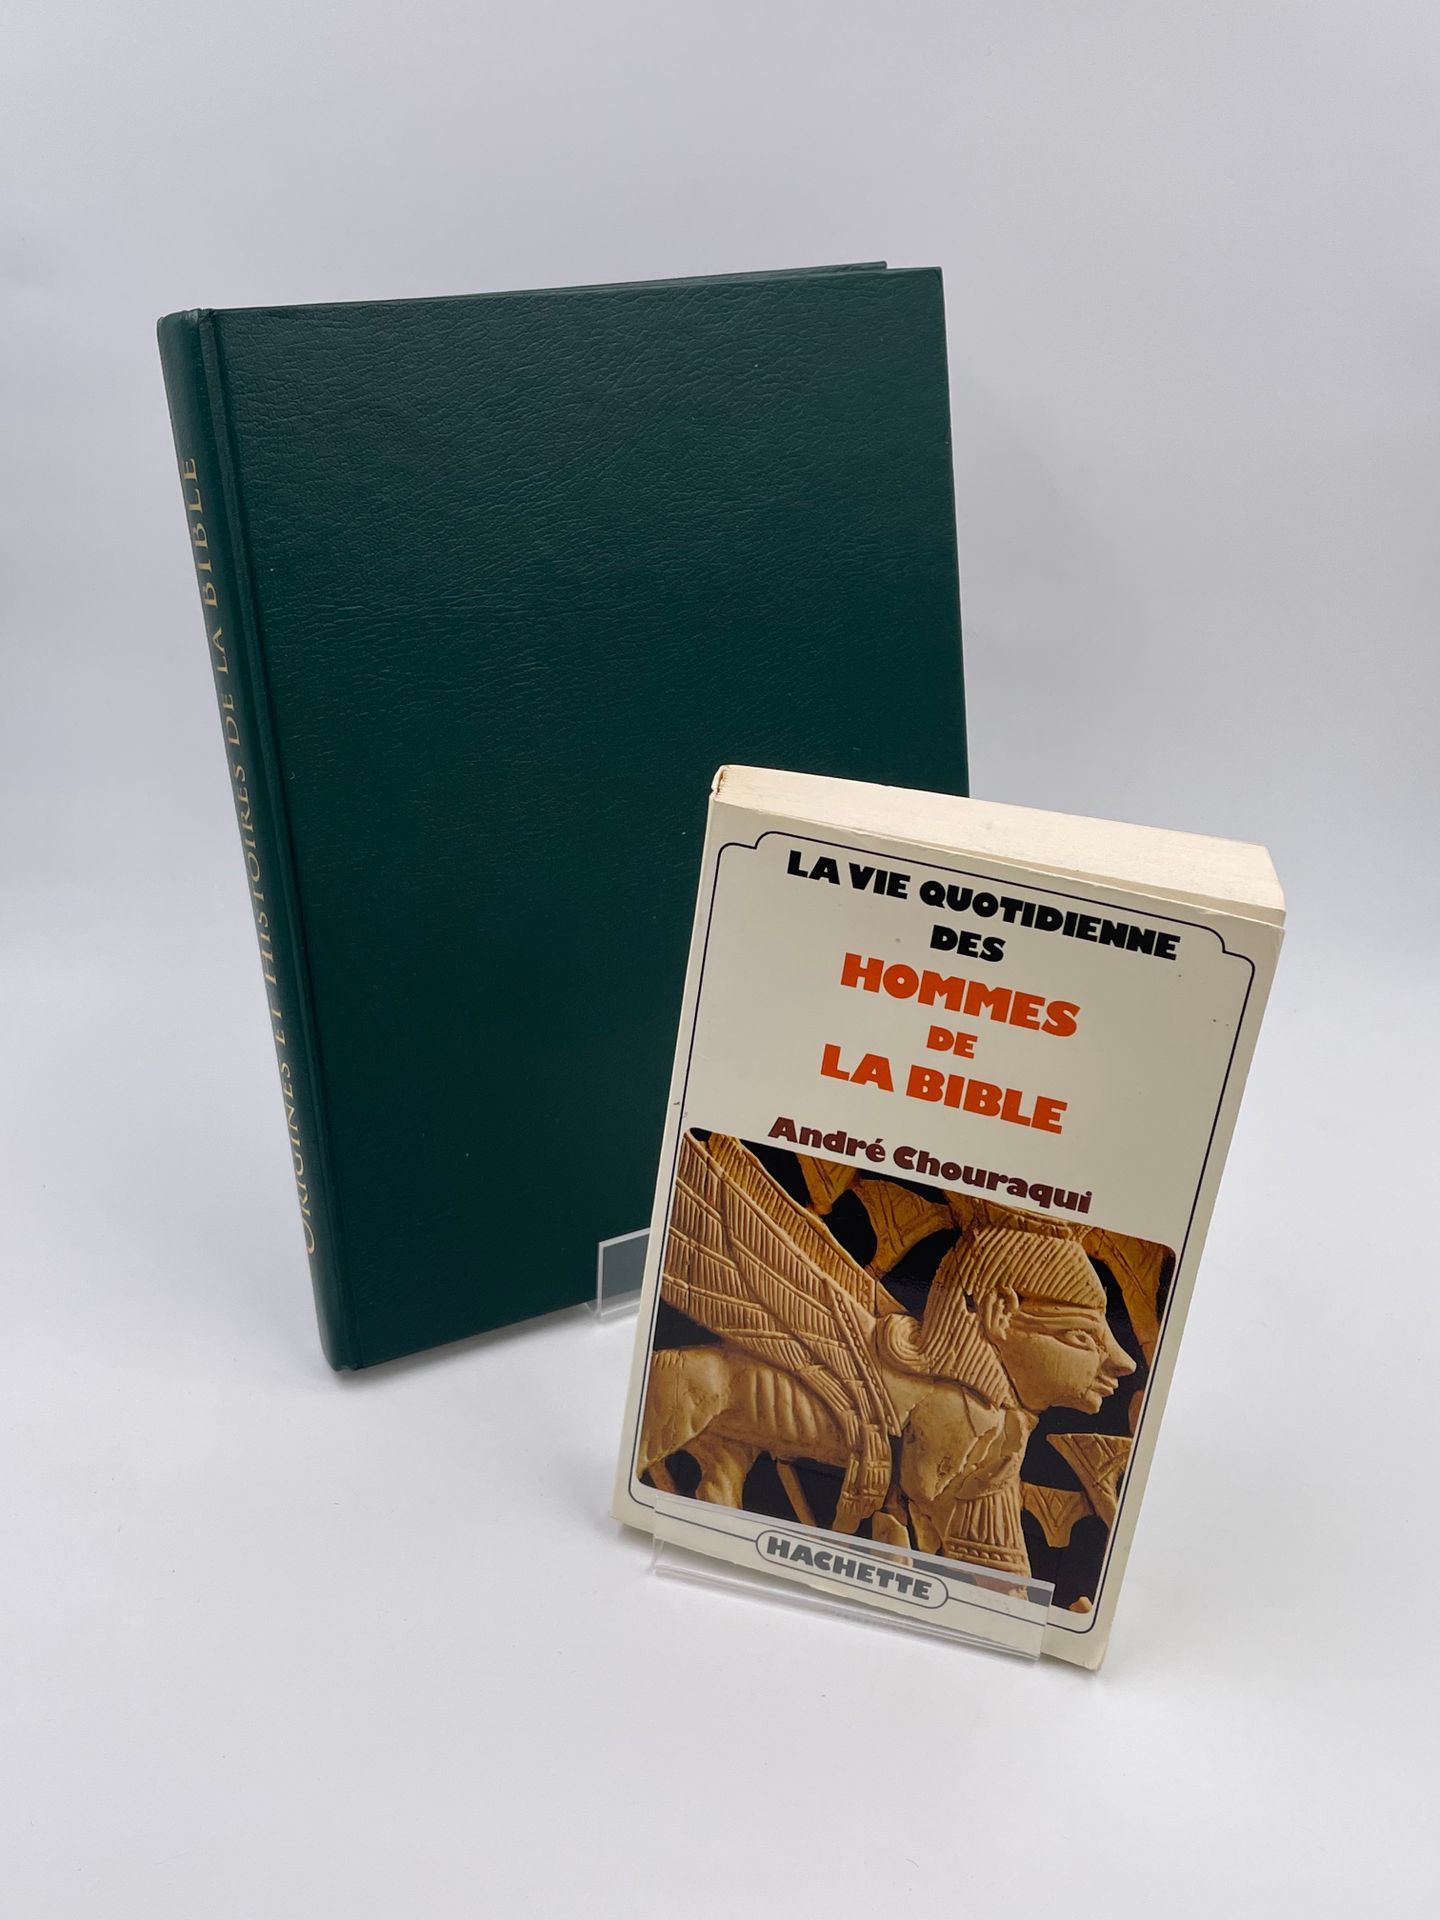 Null 2 volúmenes: 

- LA VIE QUOTIDIENNE DES HOMMES DE LA BIBLE", André Chouraqu&hellip;